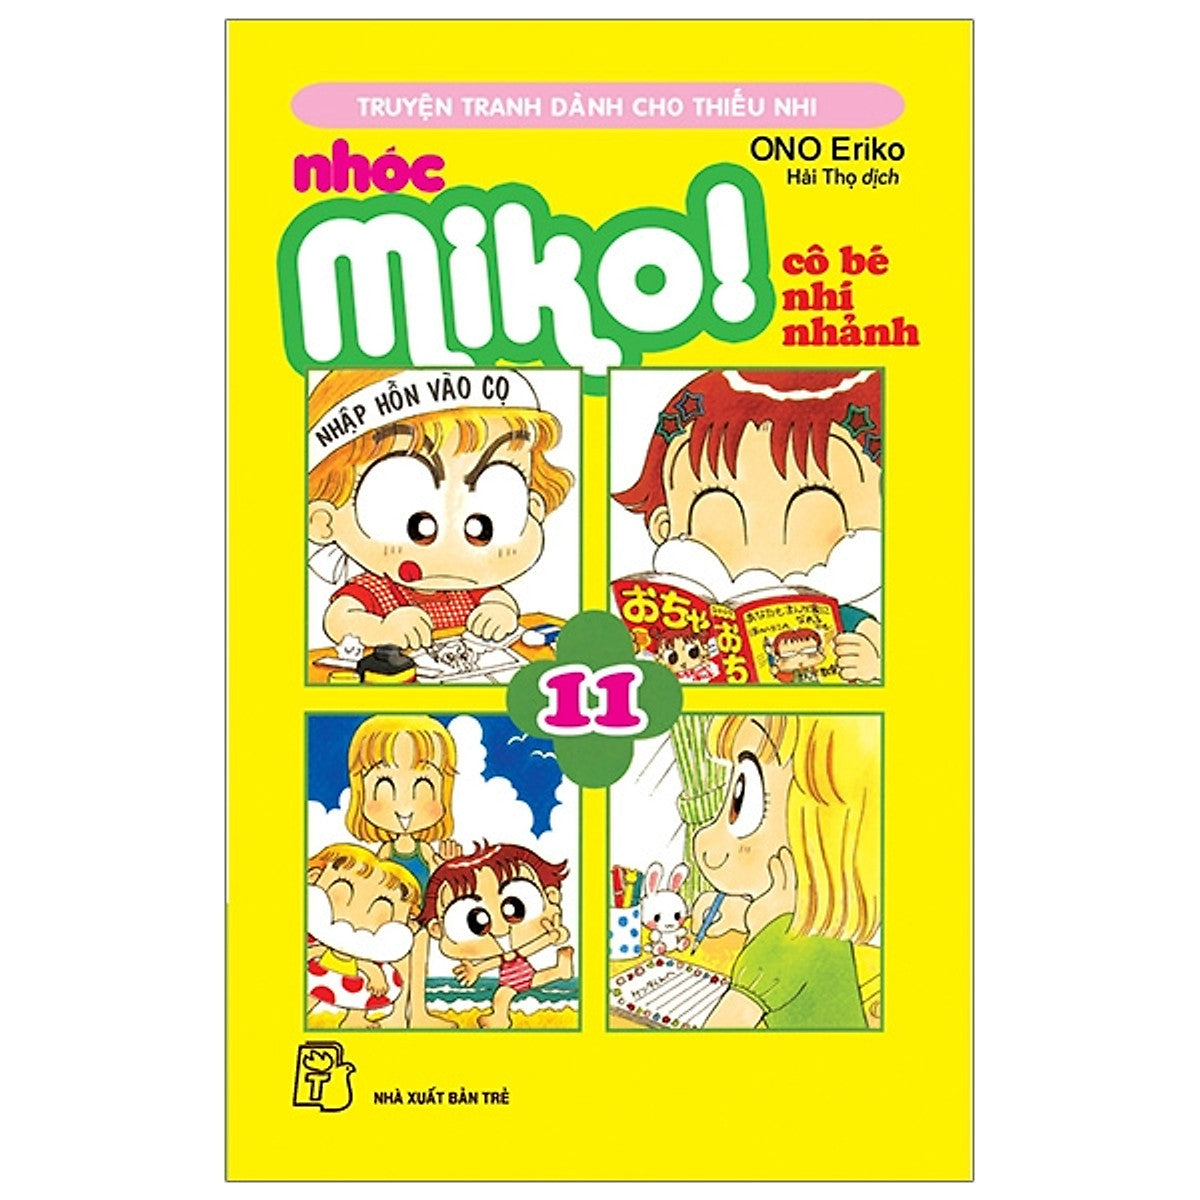 Nhóc Miko! Cô Bé Nhí Nhảnh - Tập 11